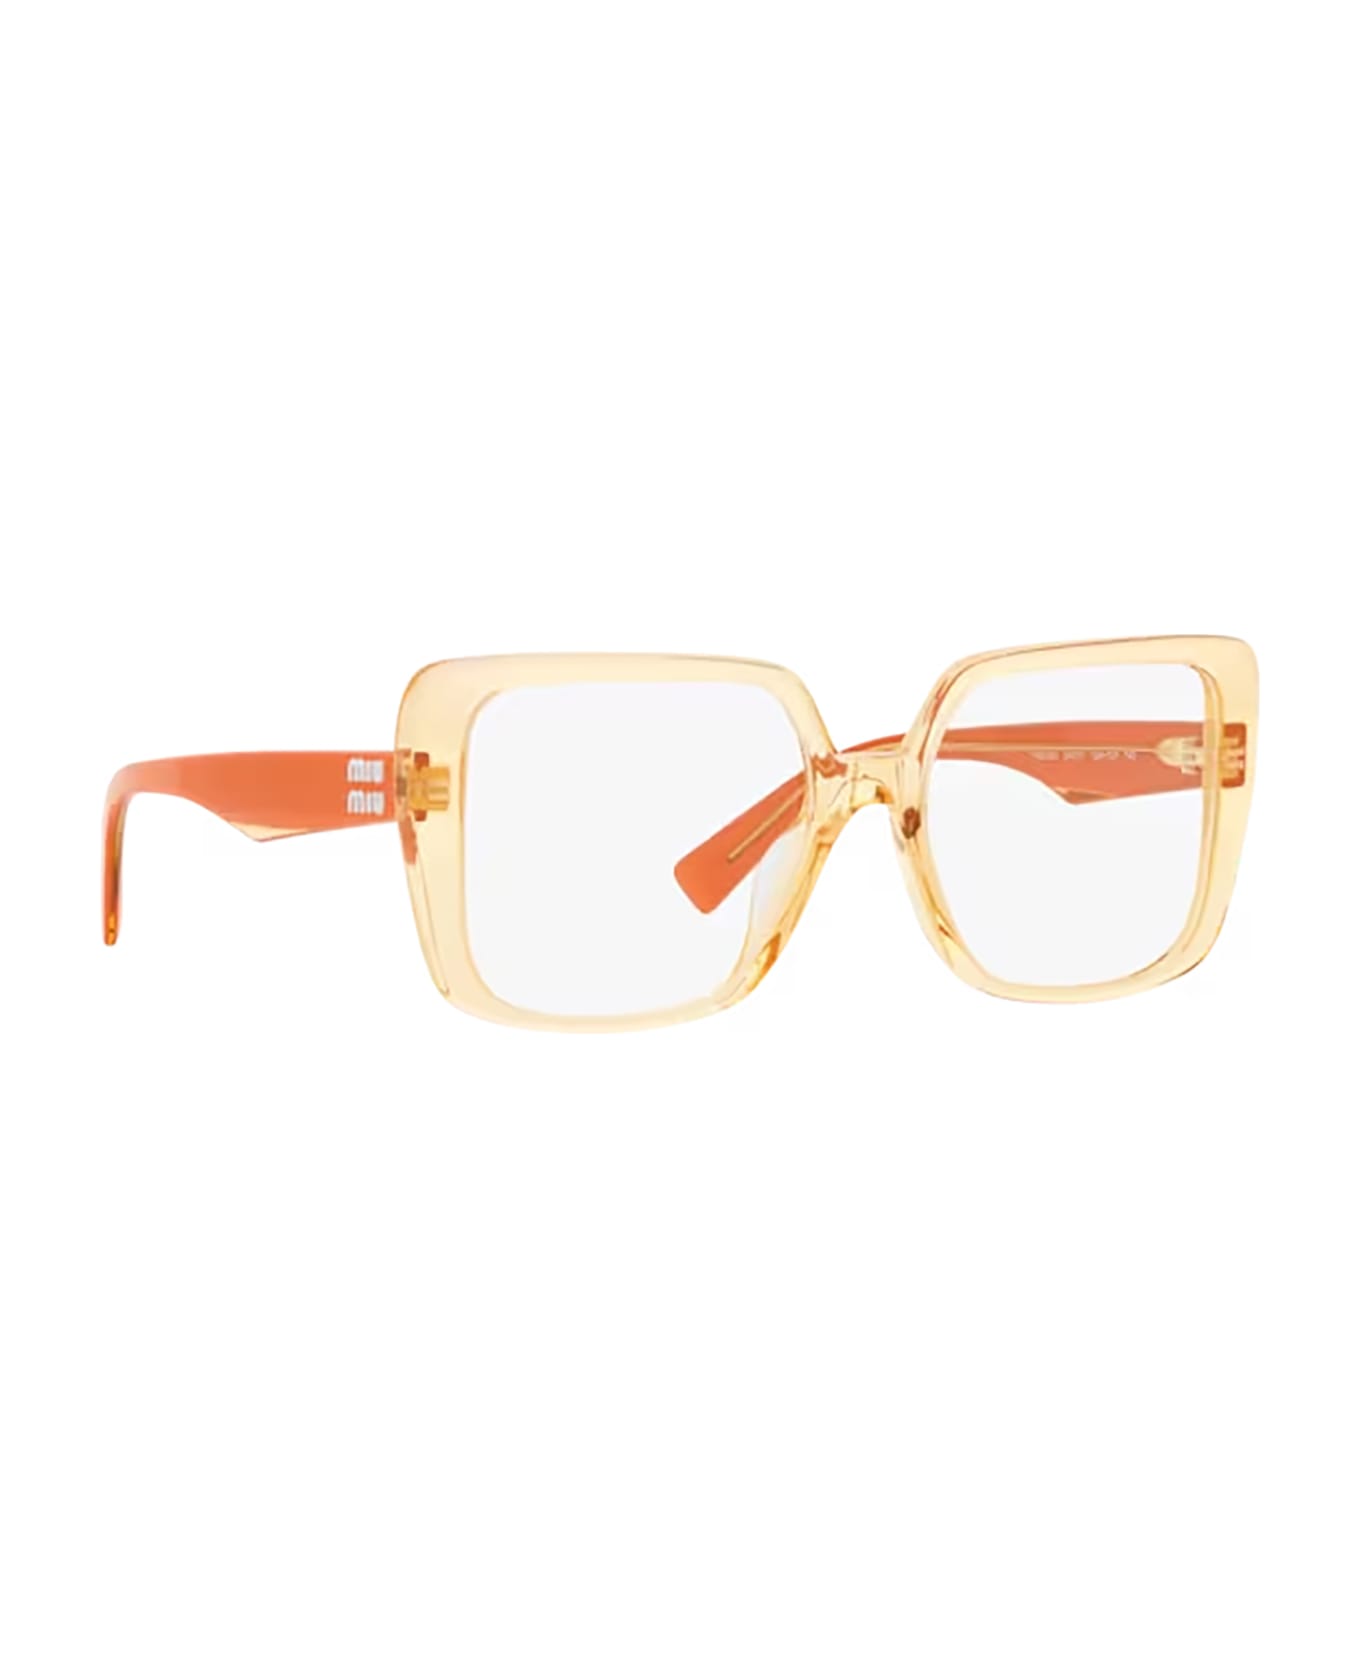 Miu Miu Eyewear Mu 06vv Orange Glasses - Orange